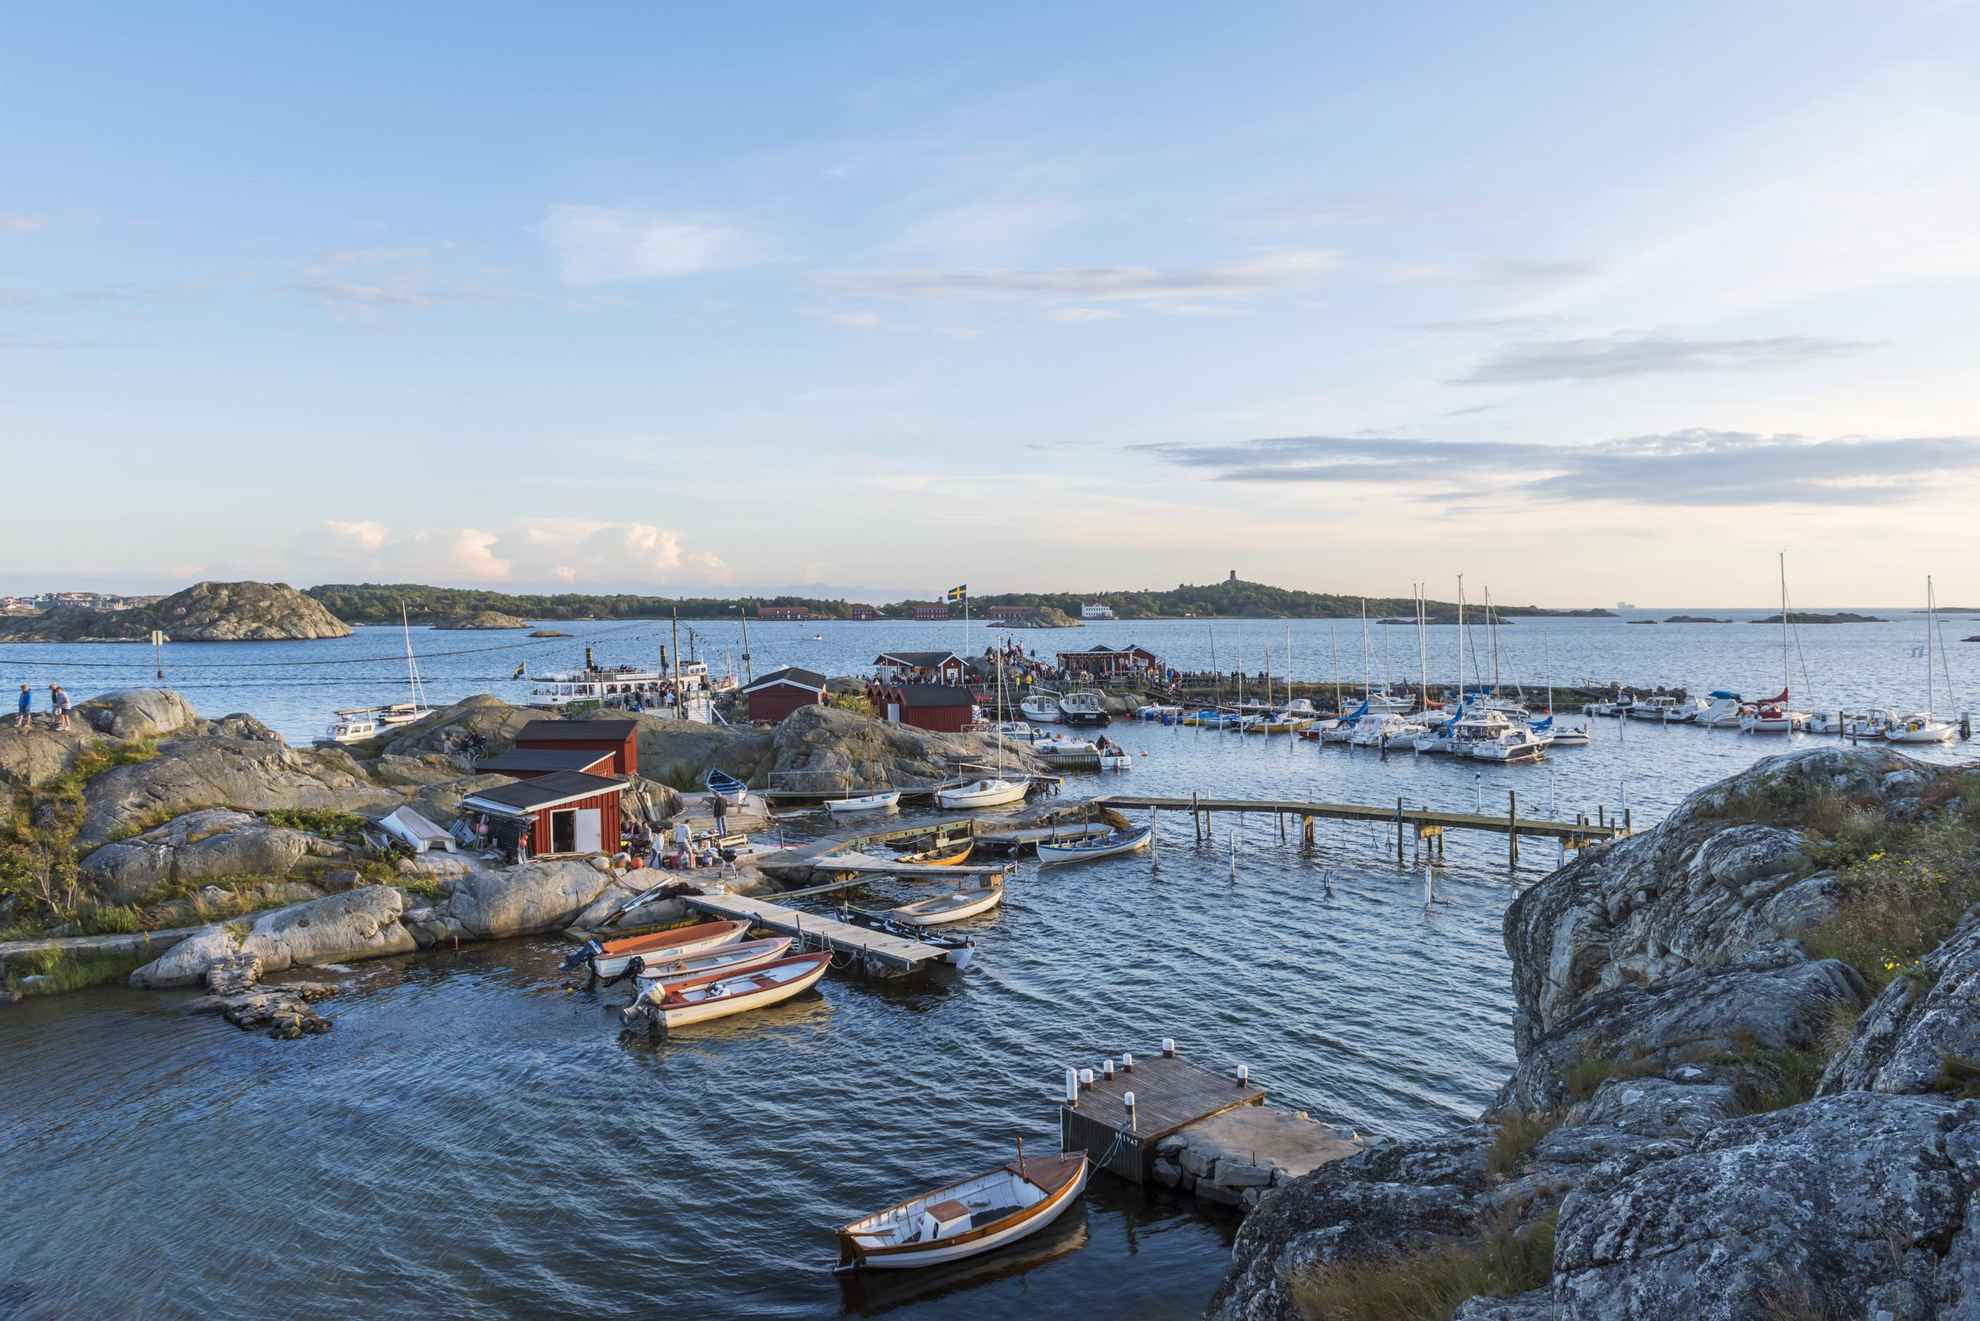 Een kleine jachthaven tussen enkele kliffen in de archipel. Kleine motorboten en zeilboten liggen aan de kade en er zijn verschillende kleine boothuisjes op de kliffen.